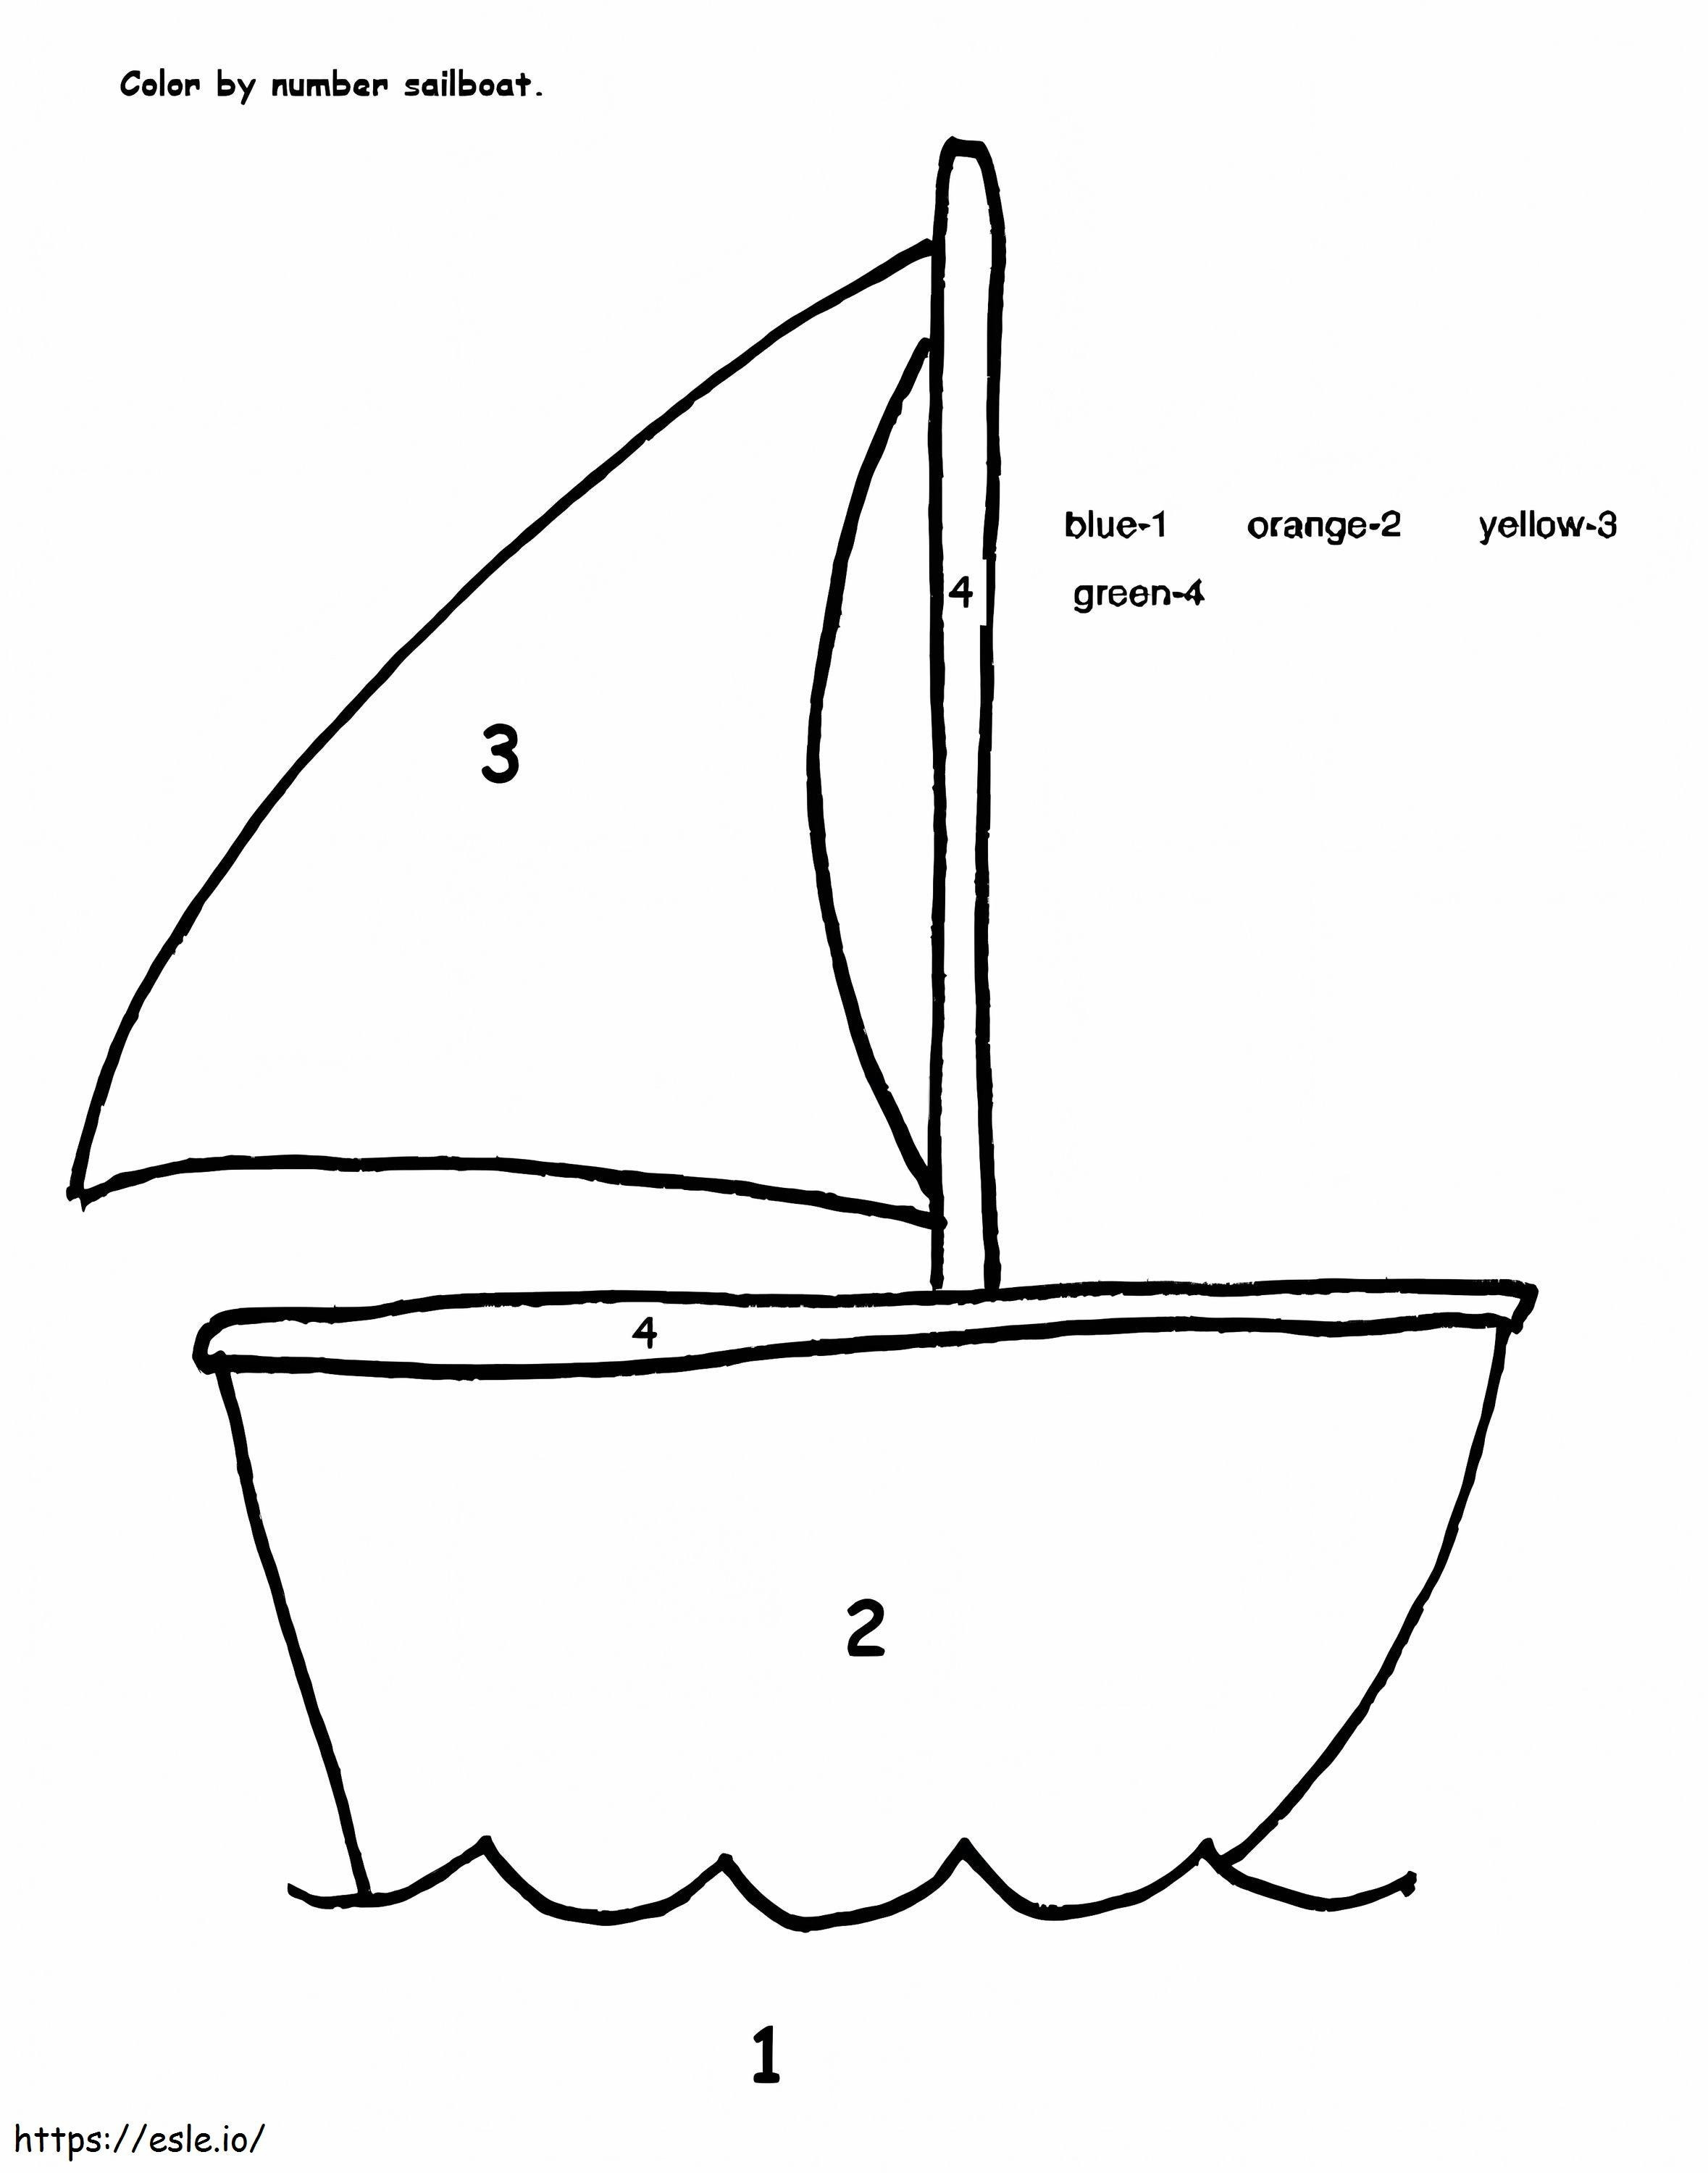 Semplice barca a vela colore per numero da colorare